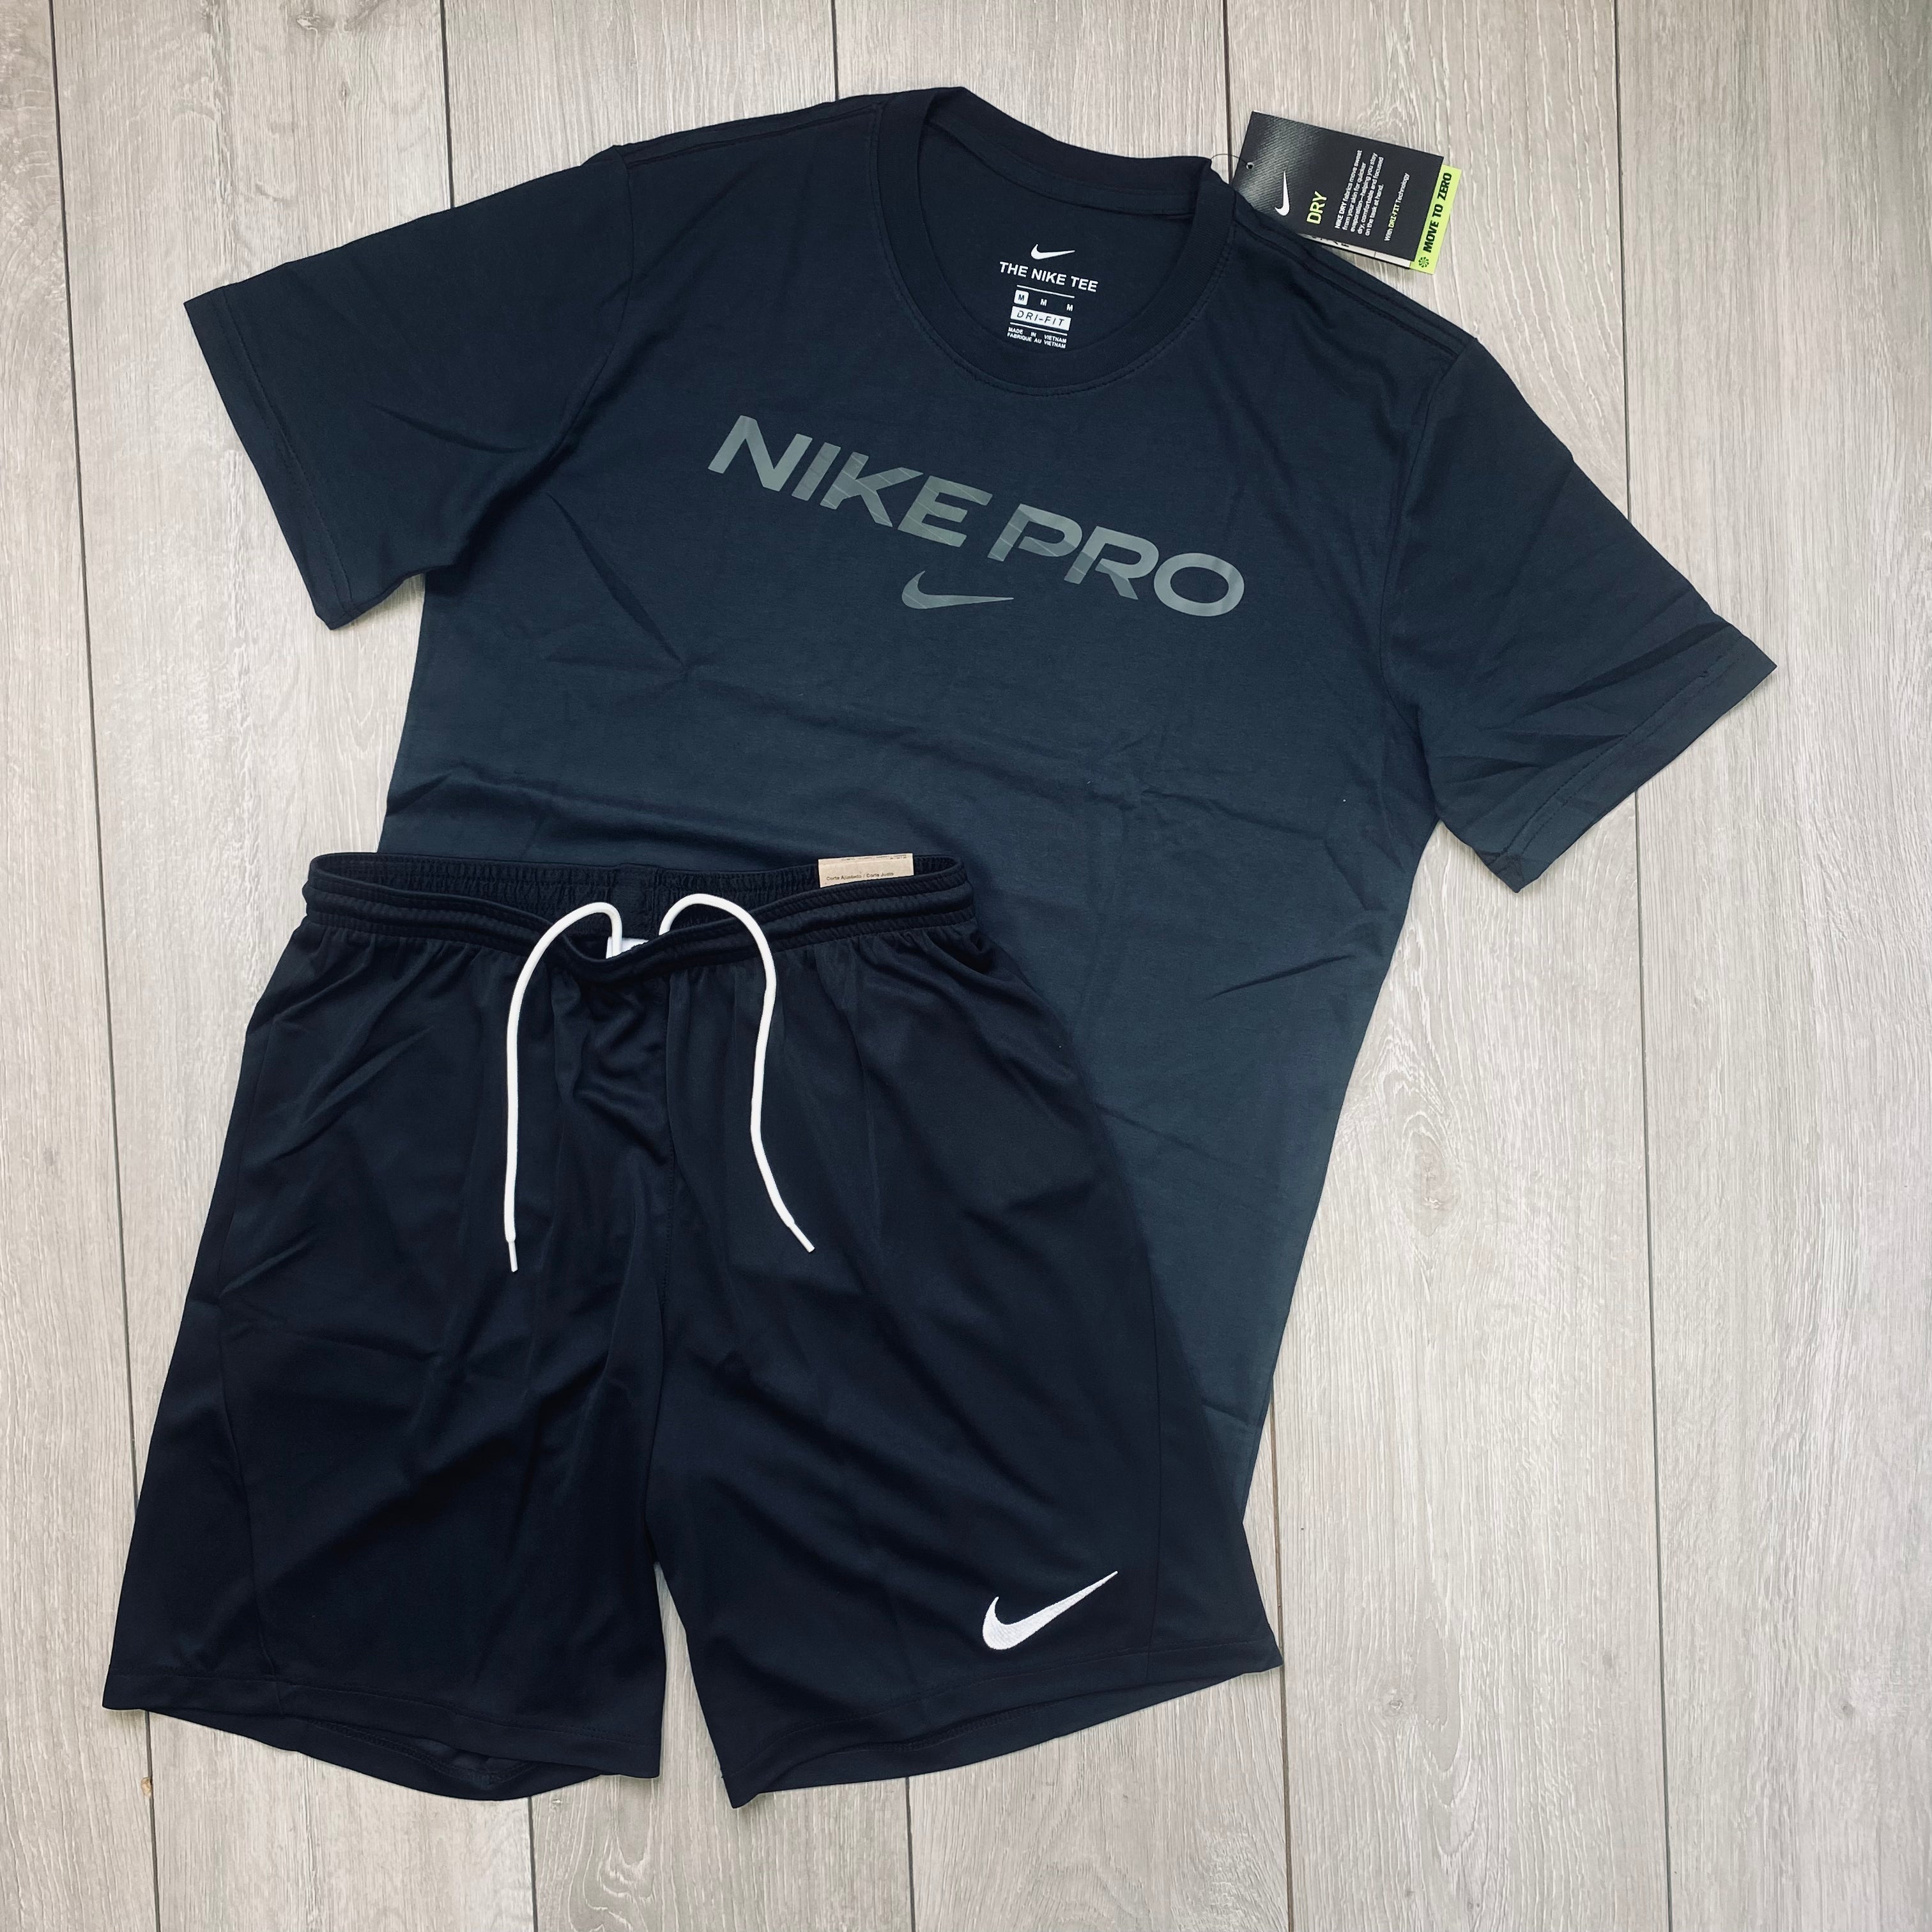 Nike Dri-Fit Pro Set - Black